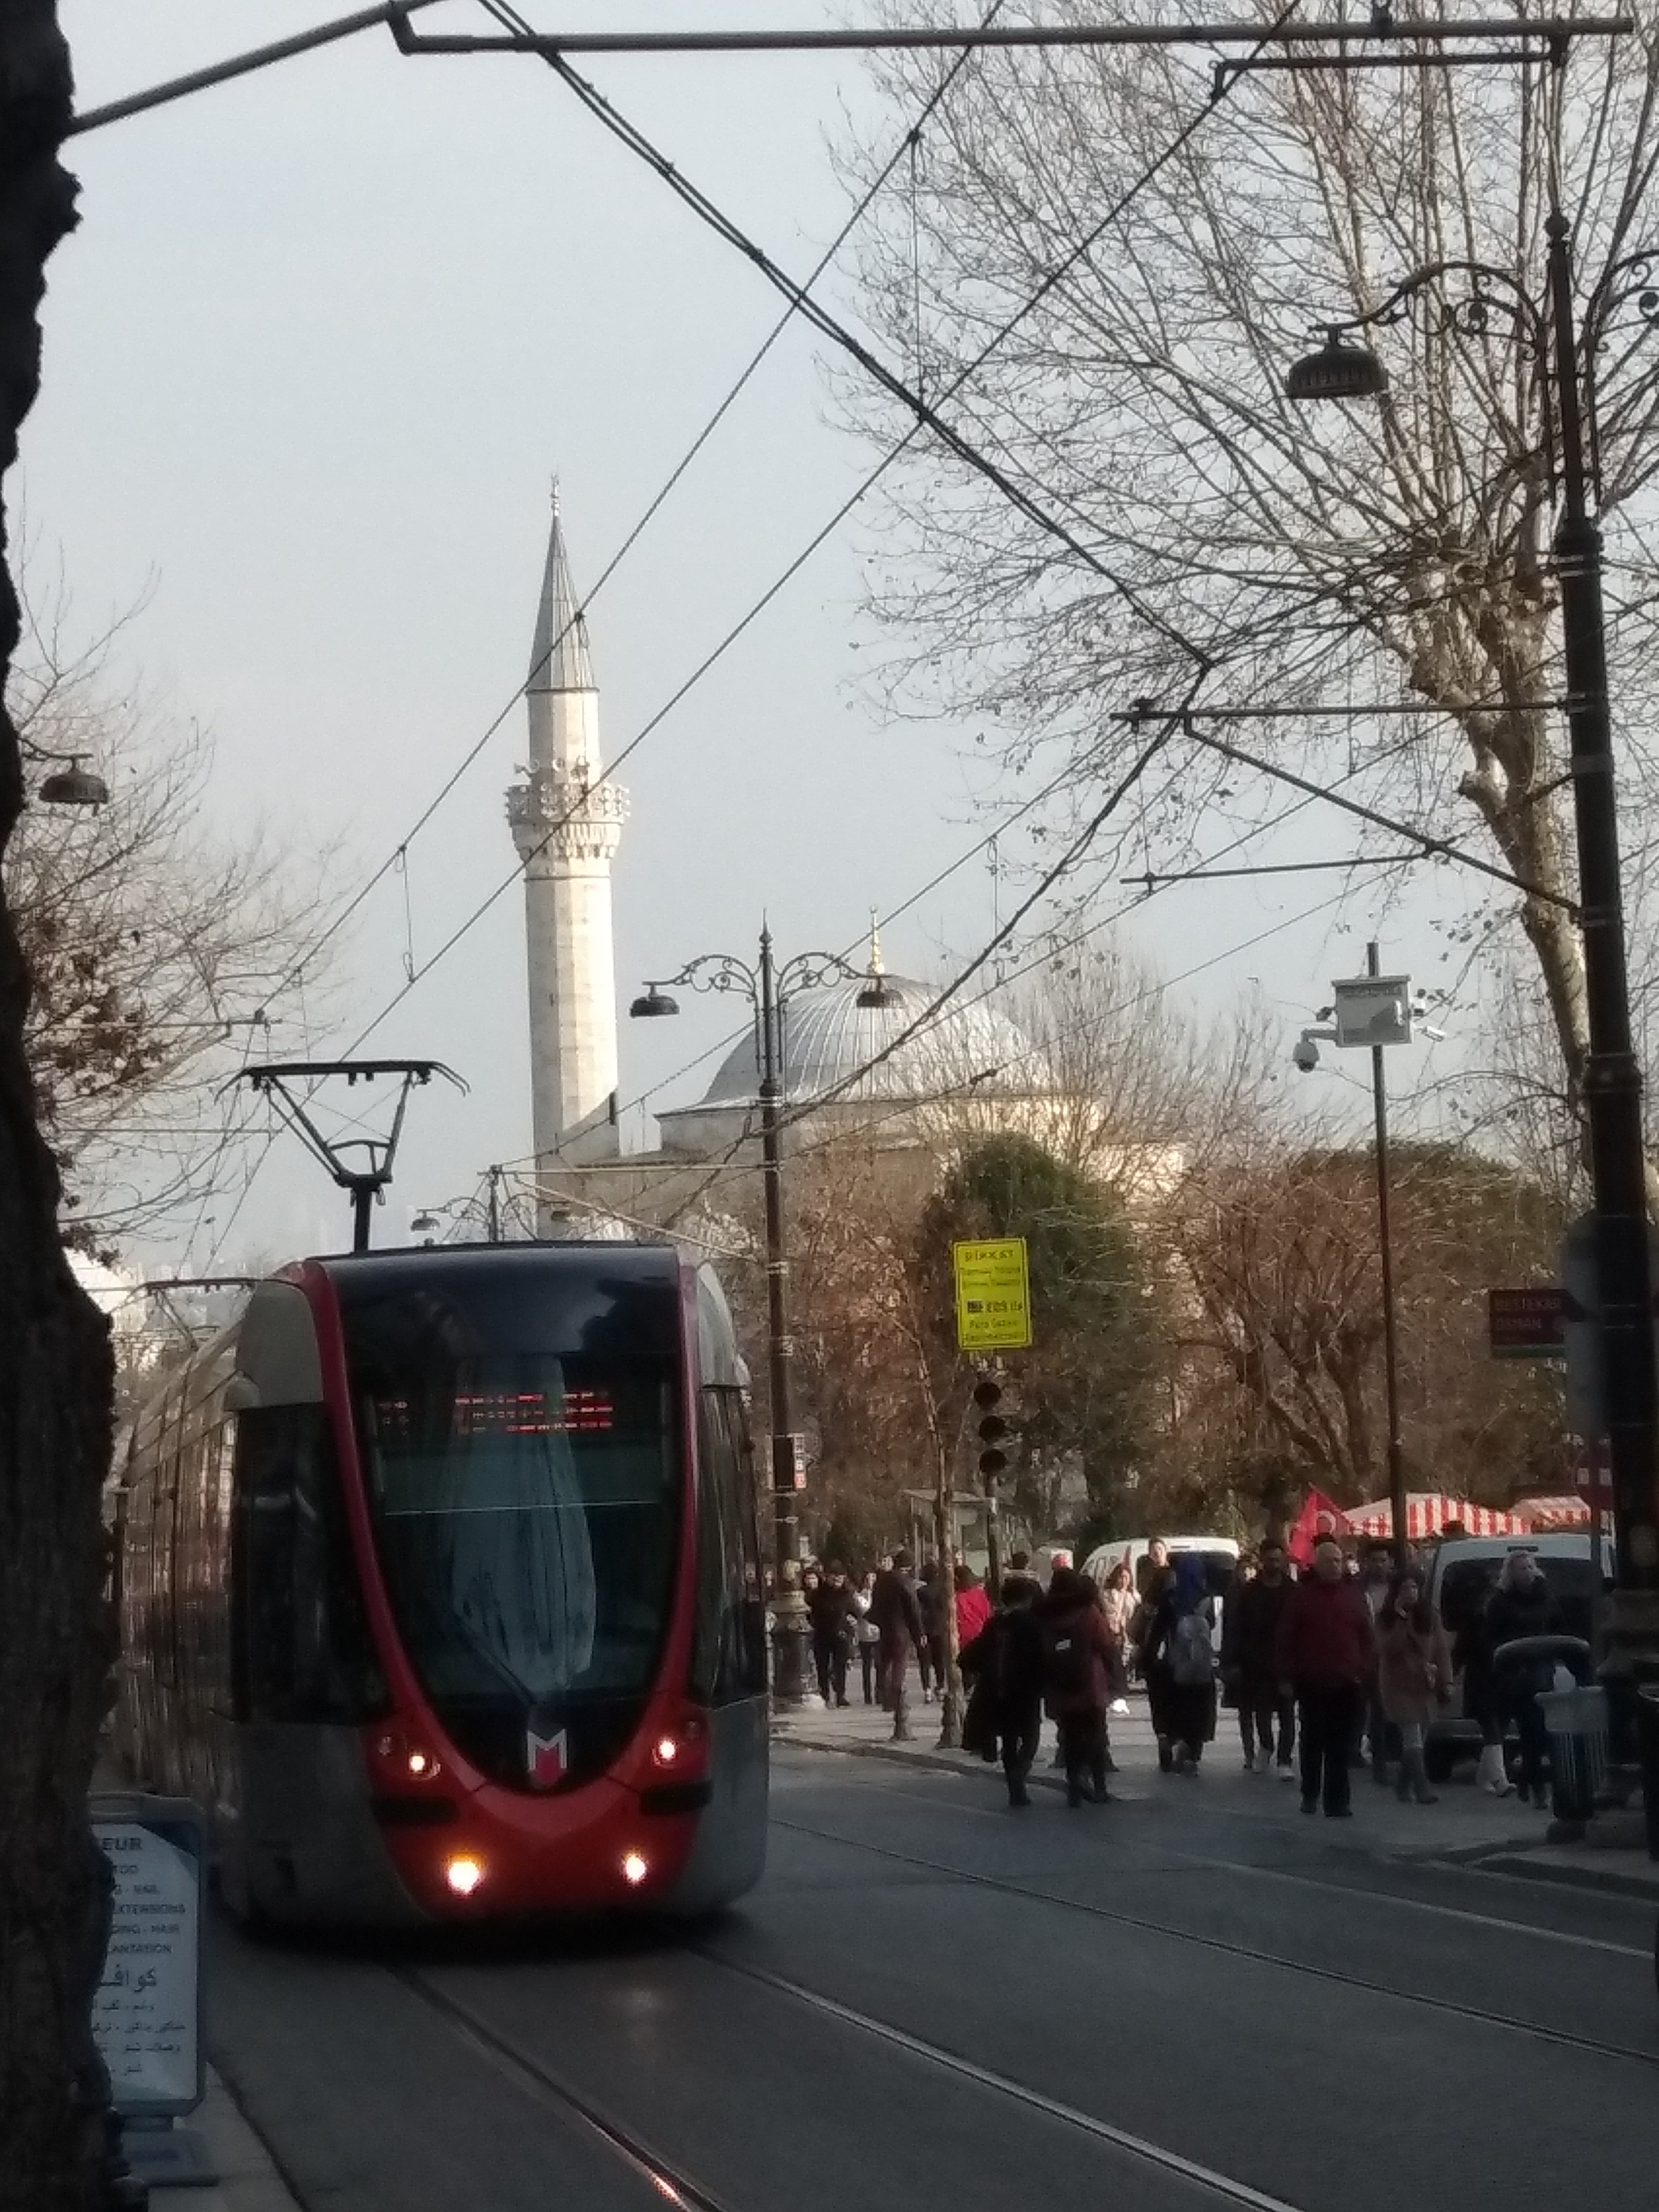 My Trip to Turkey - Istanbul